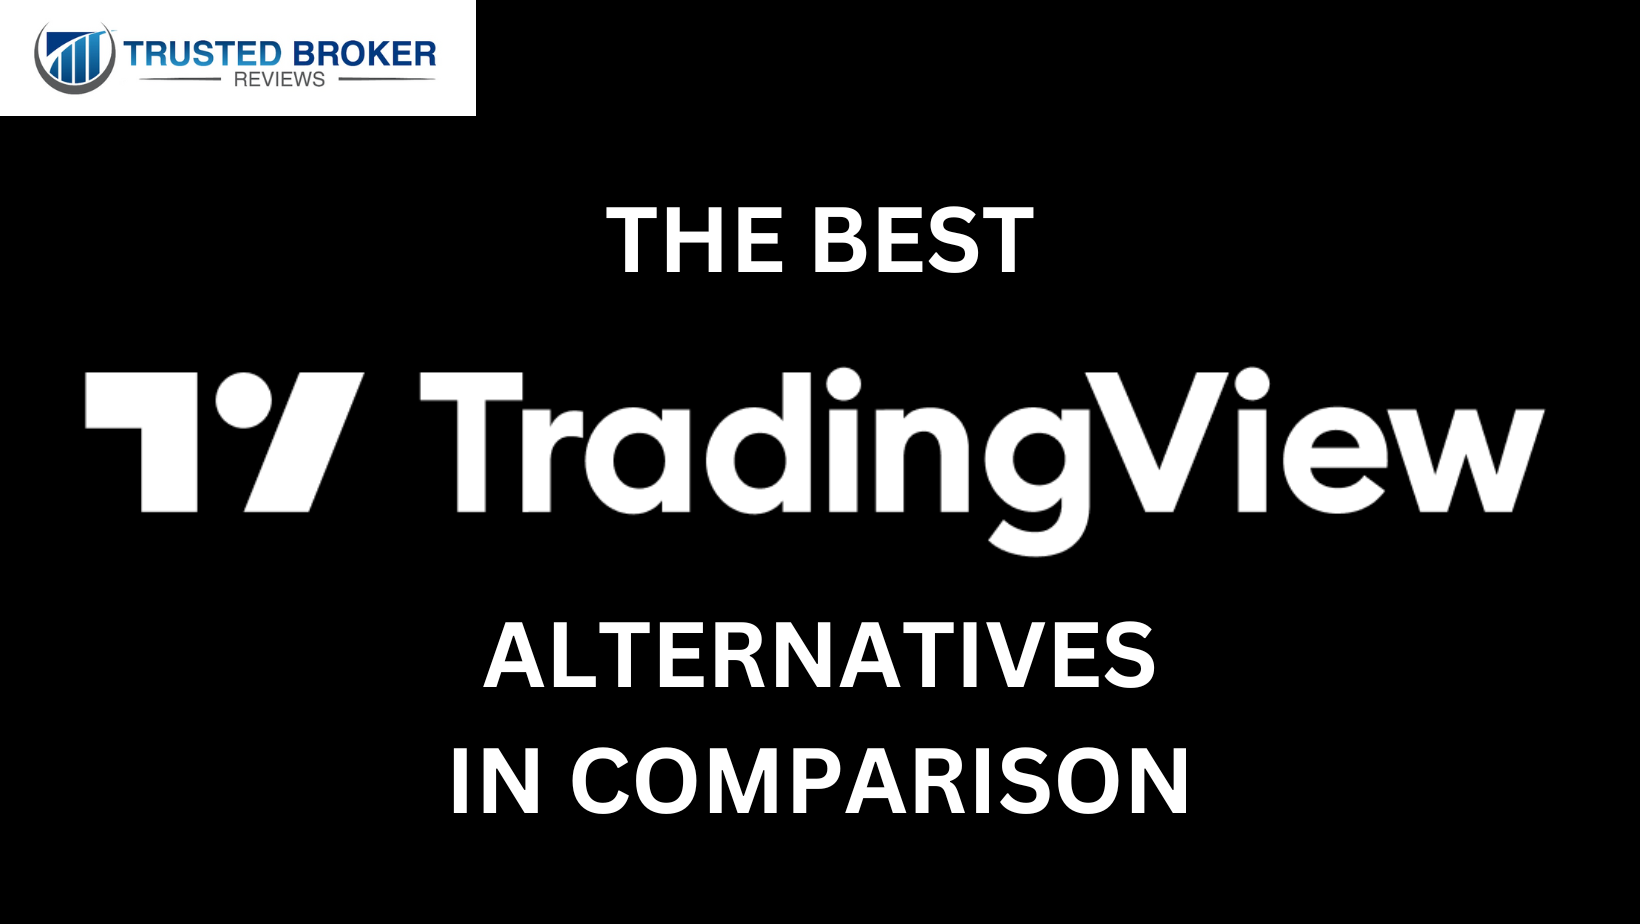 Nejlepší alternativy tradingview ve srovnání